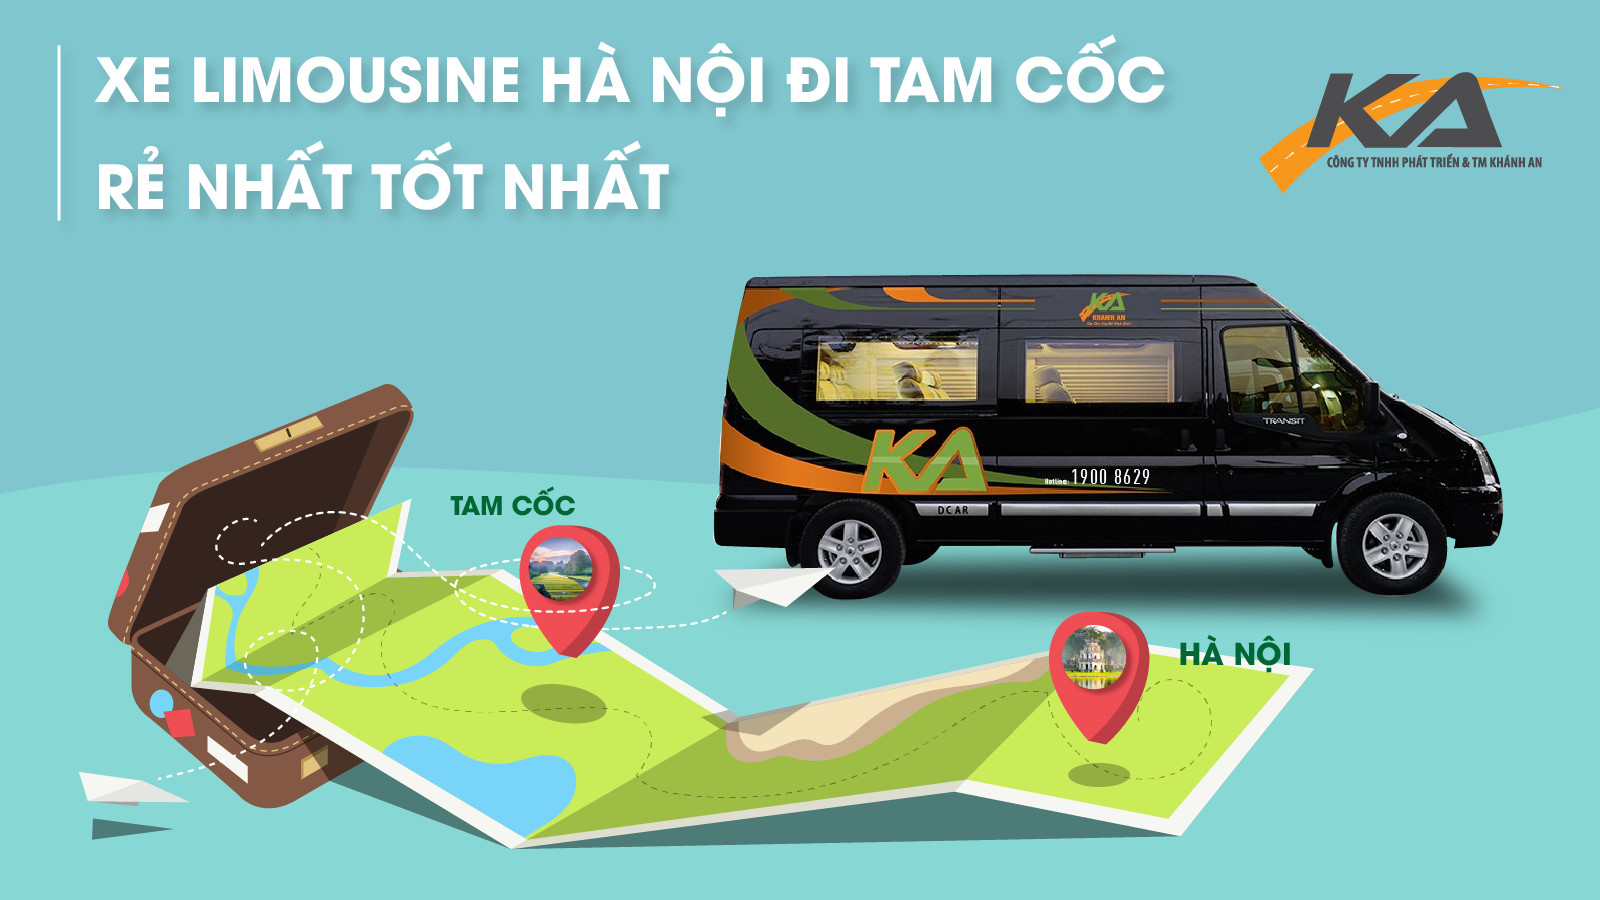 Xe Limousine Hà Nội đi Tam Cốc Ninh Bình rẻ nhất tốt nhất